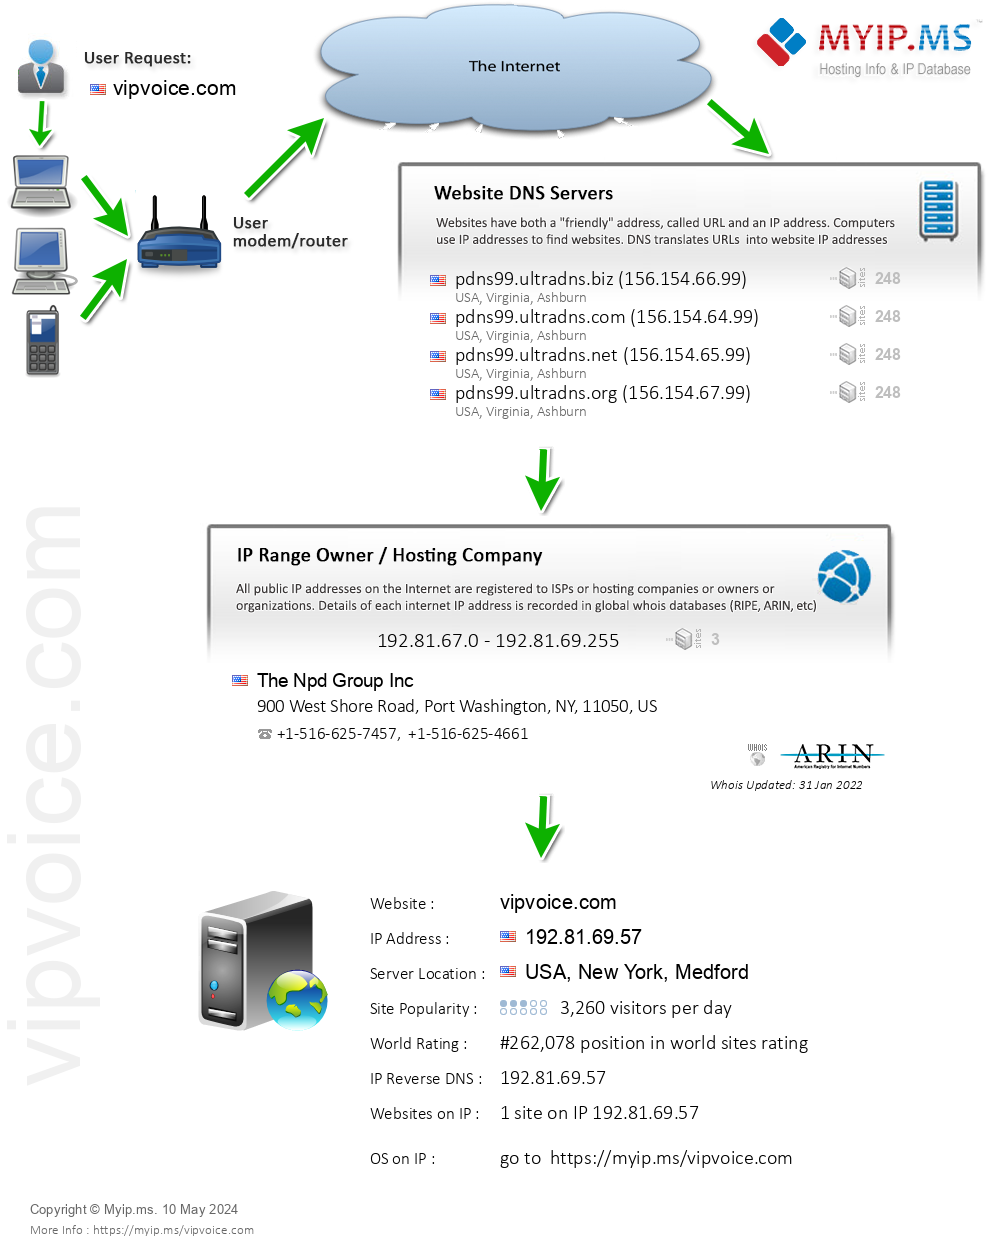 Vipvoice.com - Website Hosting Visual IP Diagram